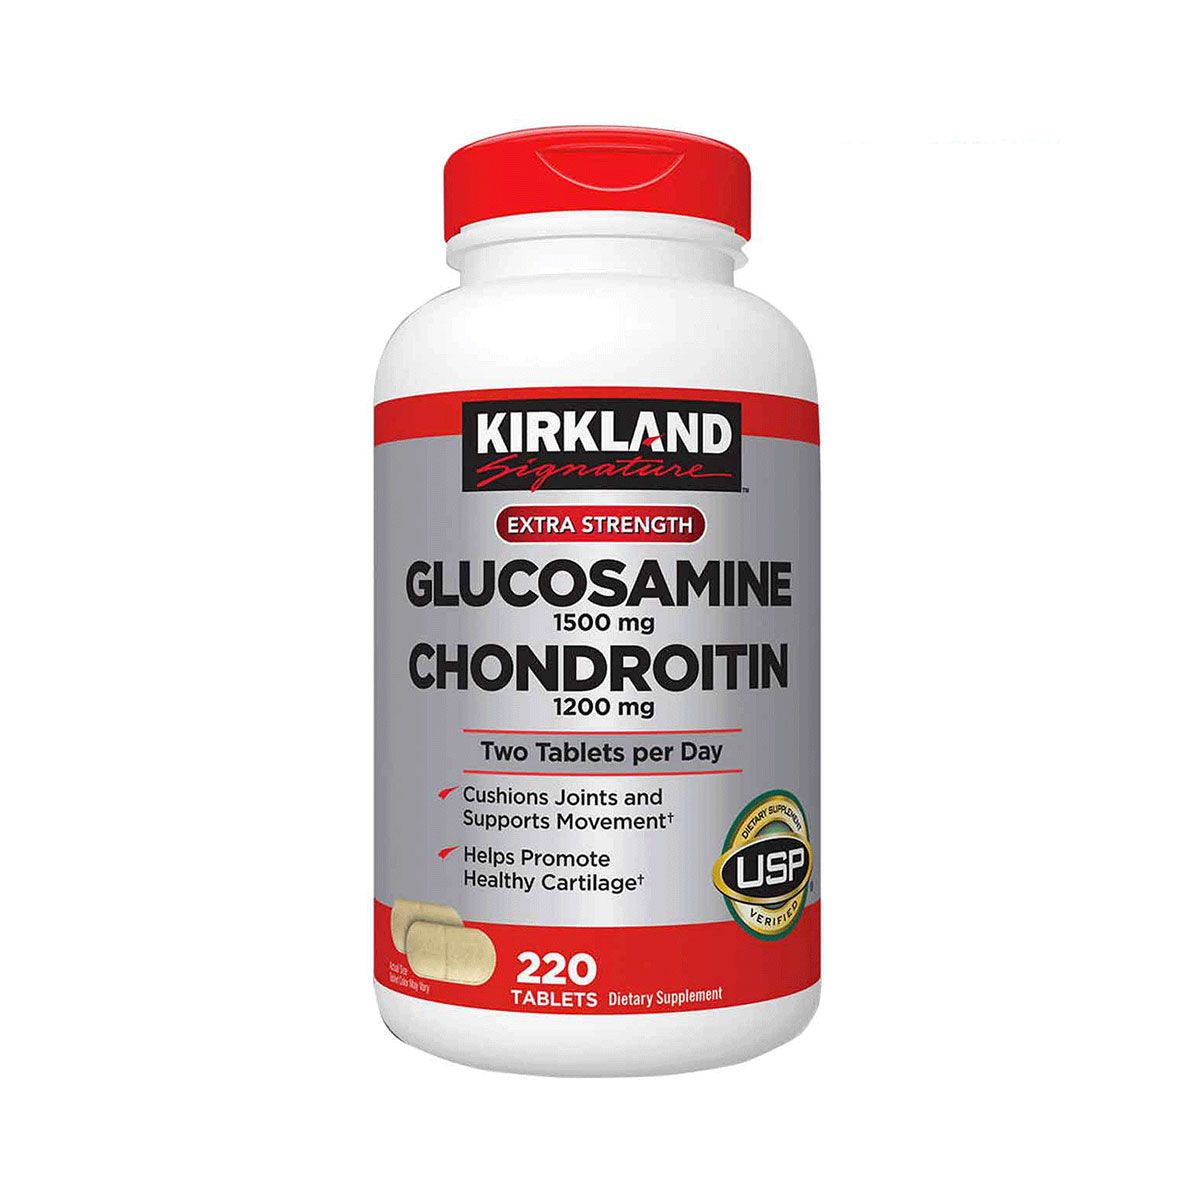  Glucosamine 1500 mg Chondroitin 1200 mg 